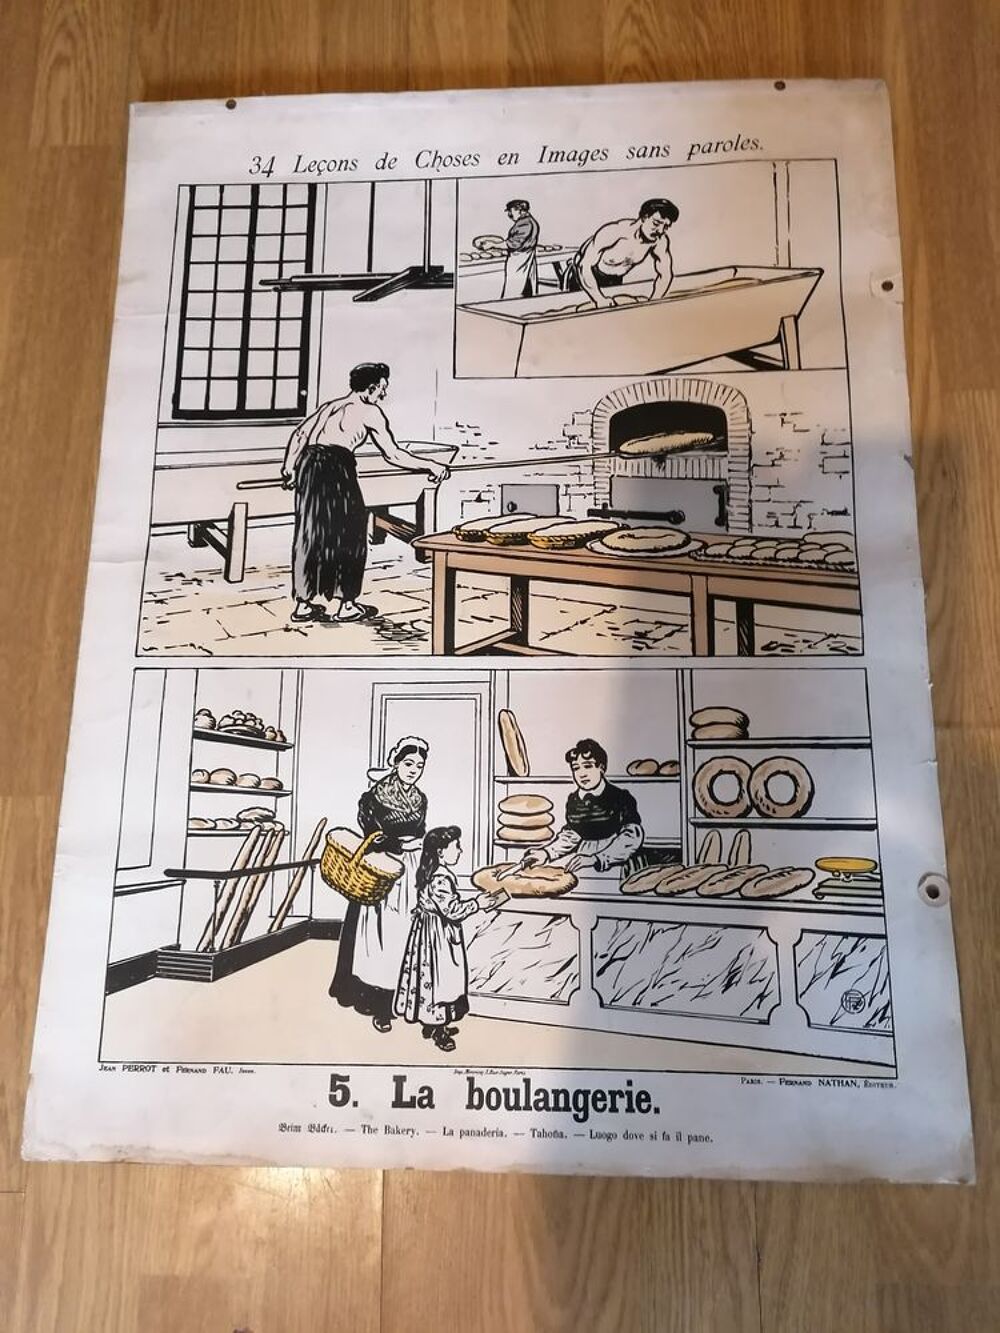 Affiche mural boulangerie la anges j perrot F fau 1920 